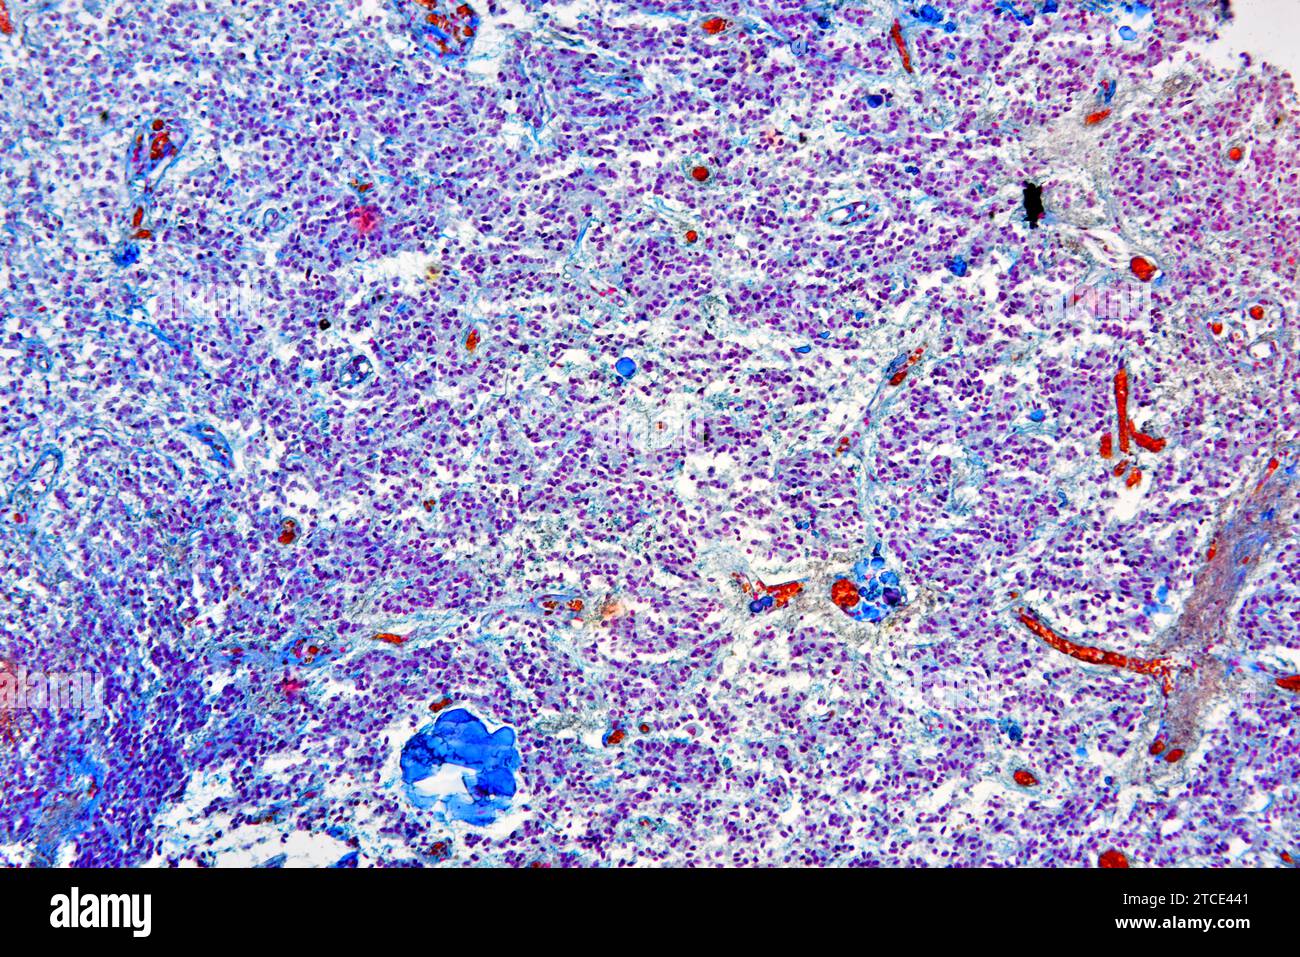 Glande pinéale normale produisant de la mélatonine et de la sérotonine. Microscope optique X100. Banque D'Images